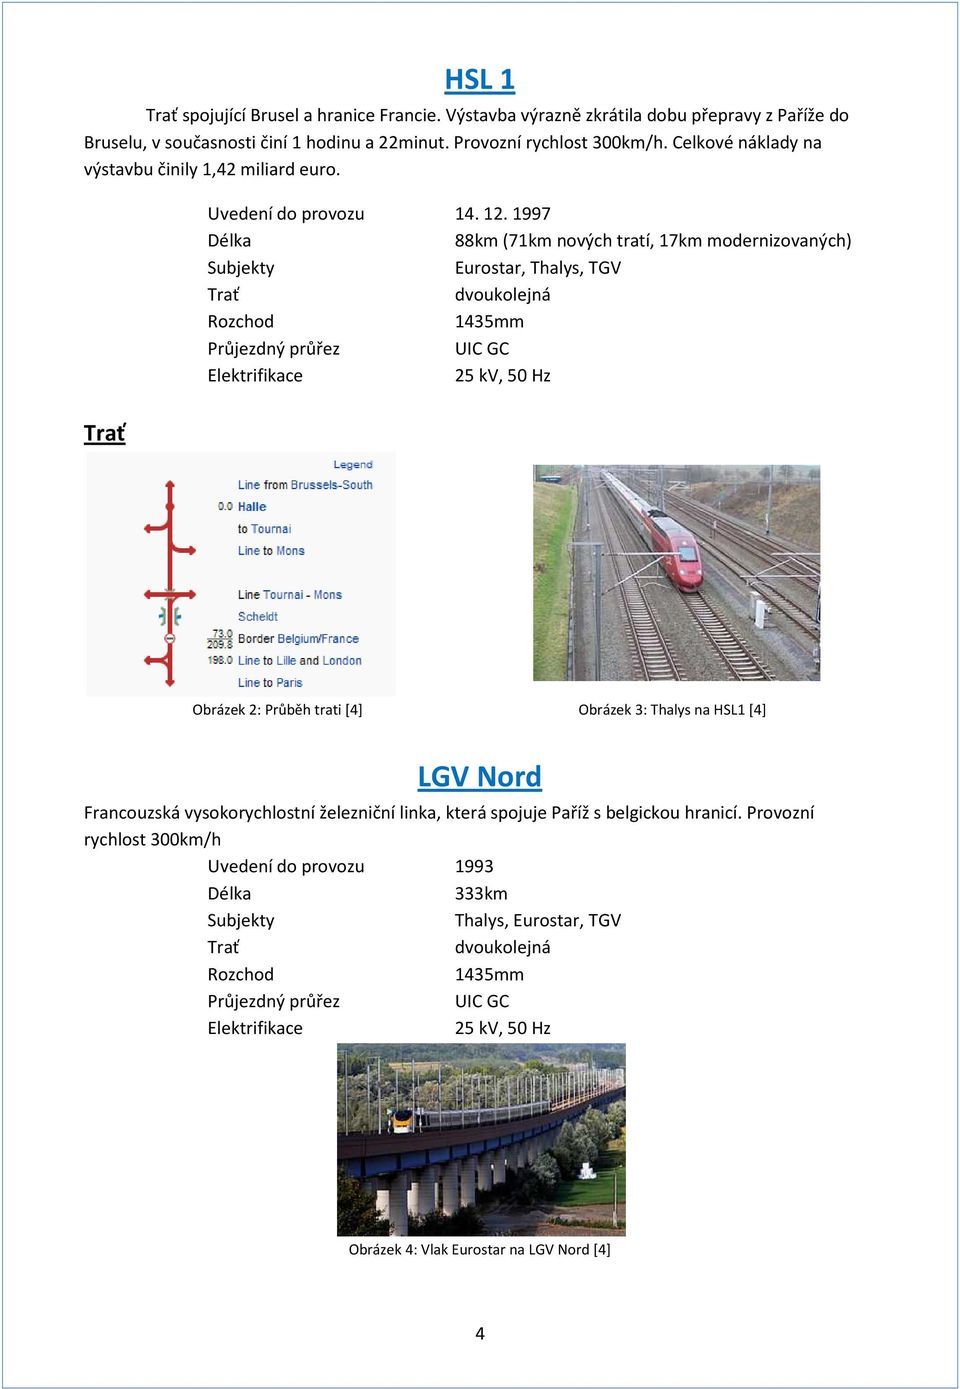 1997 Délka 88km (71km nových tratí, 17km modernizovaných) Subjekty Eurostar, Thalys, TGV dvoukolejná Rozchod 1435mm Průjezdný průřez UIC GC Elektrifikace 25 kv, 50 Hz Obrázek 2: Průběh trati [4]